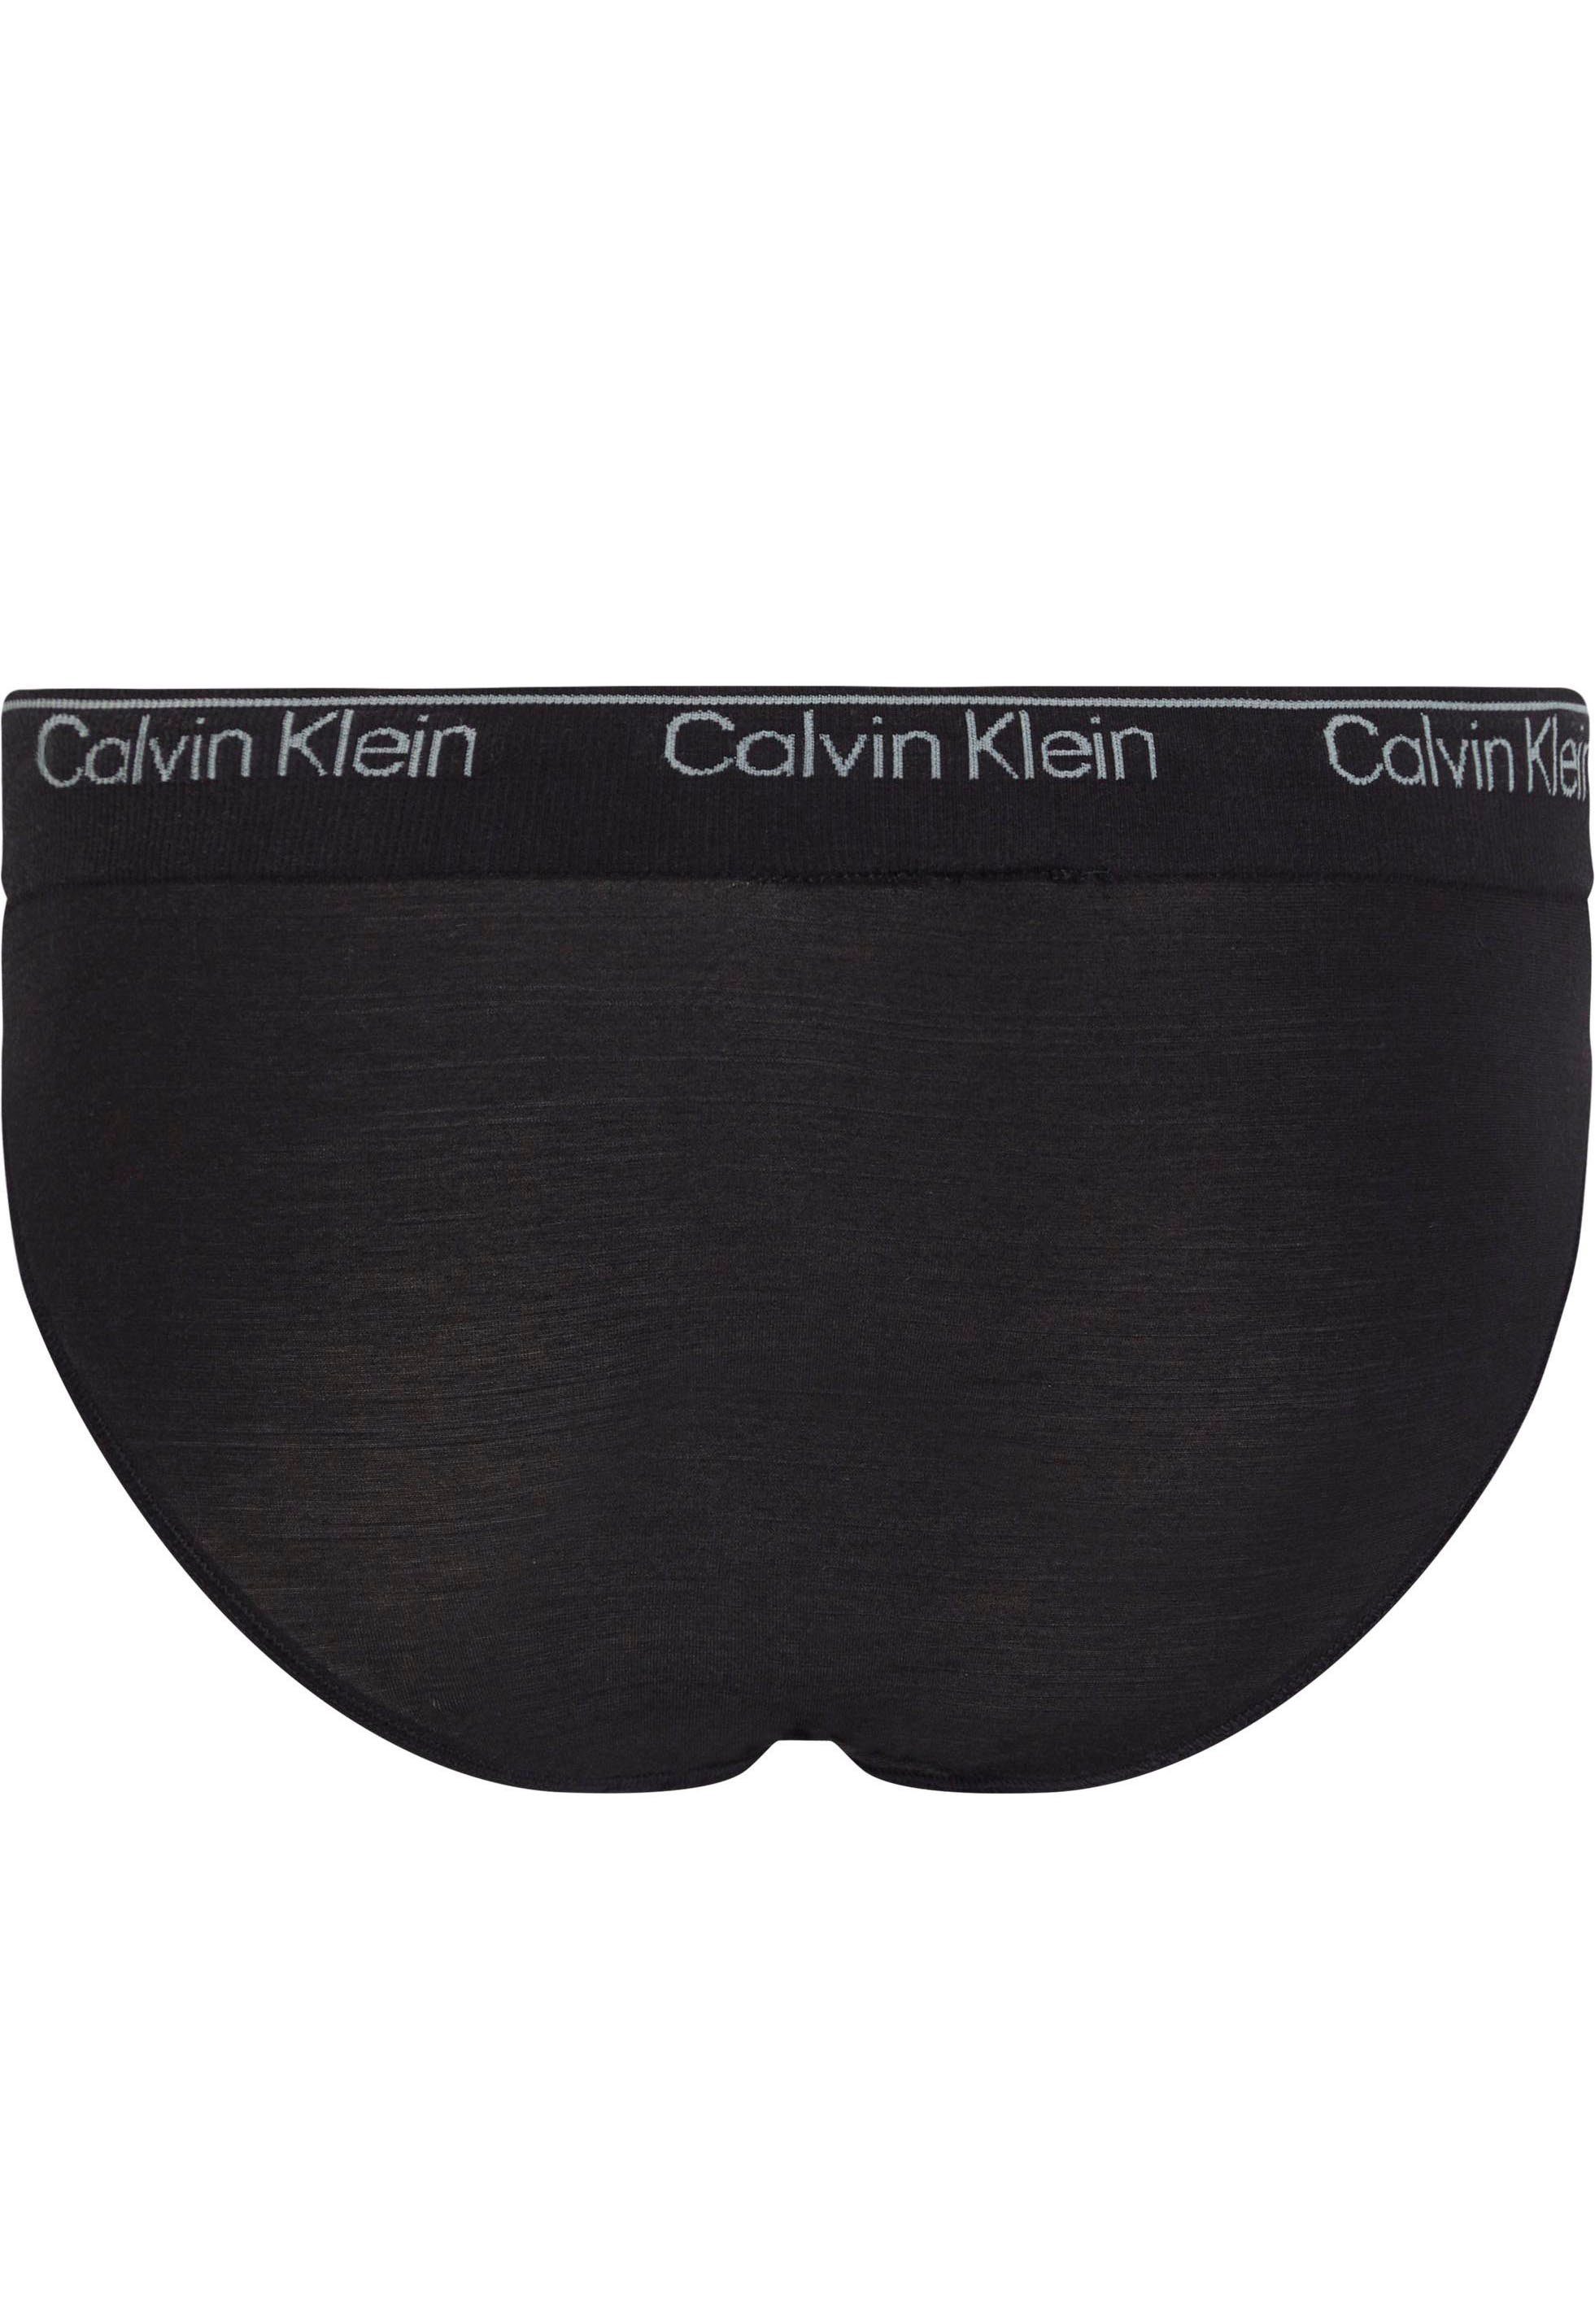 Bikinislip am BIKINI Calvin mit Klein Underwear Bund schwarz CK-Logo